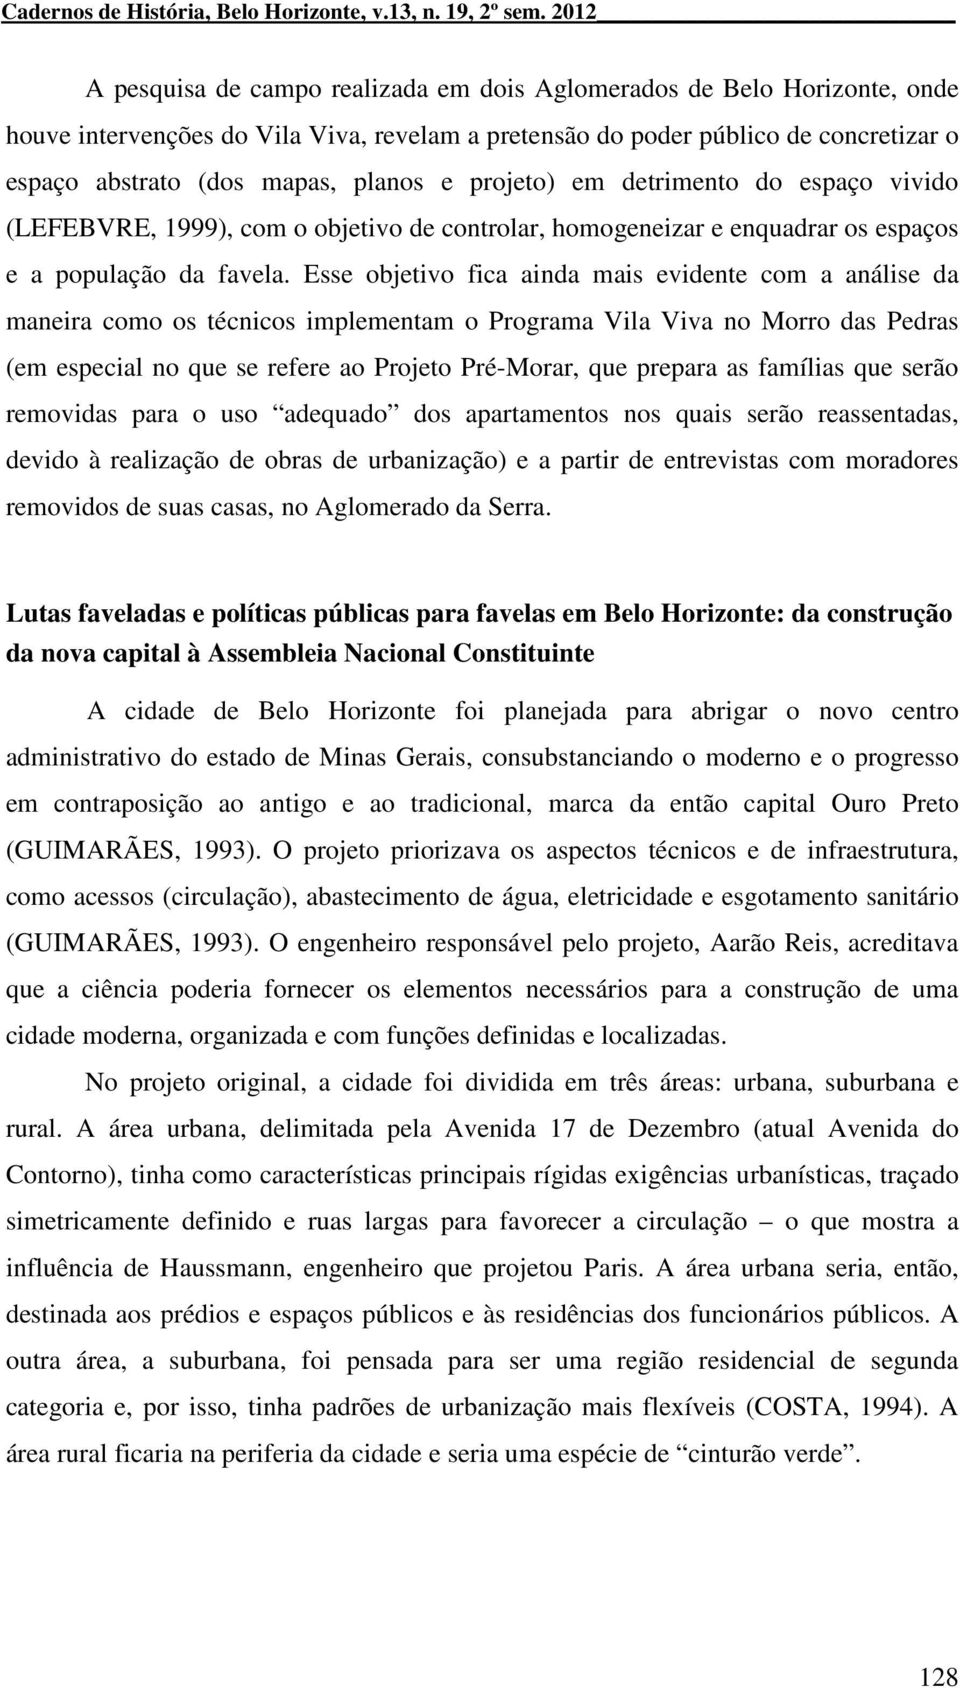 planos e projeto) em detrimento do espaço vivido (LEFEBVRE, 1999), com o objetivo de controlar, homogeneizar e enquadrar os espaços e a população da favela.